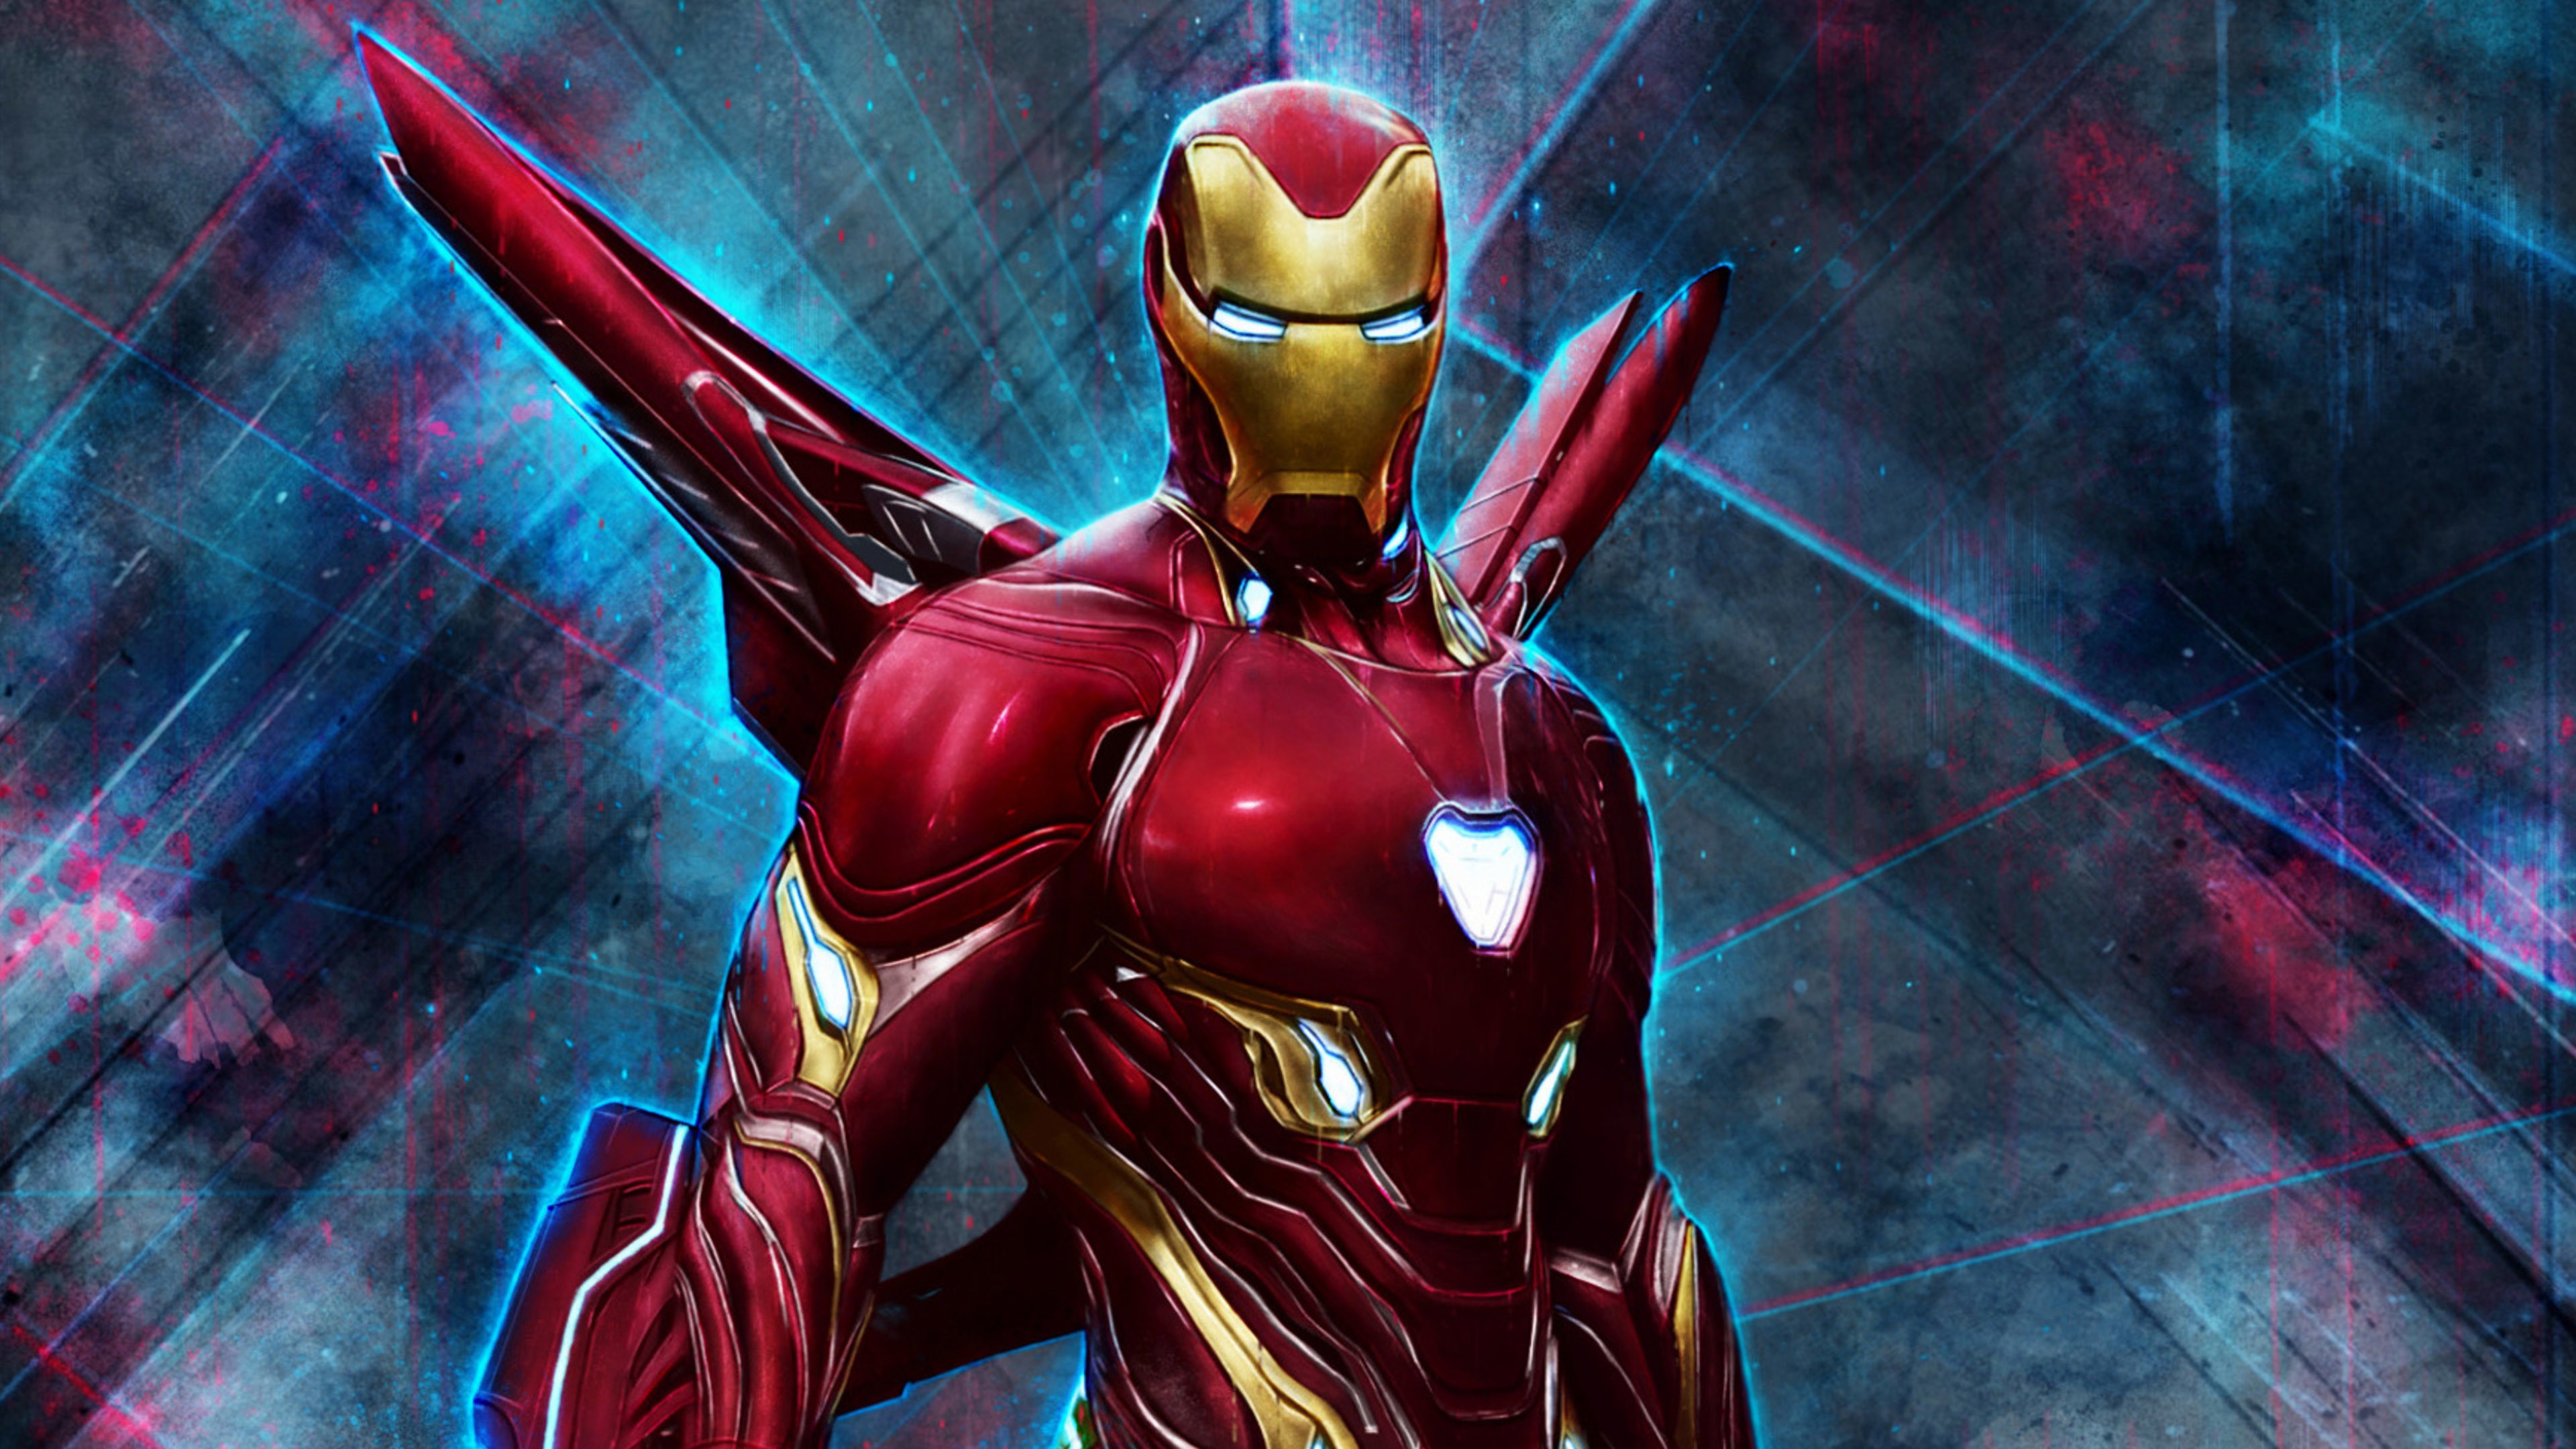 4k Pic Of Superhero Iron Man - Iron Man Endgame Suit - HD Wallpaper 